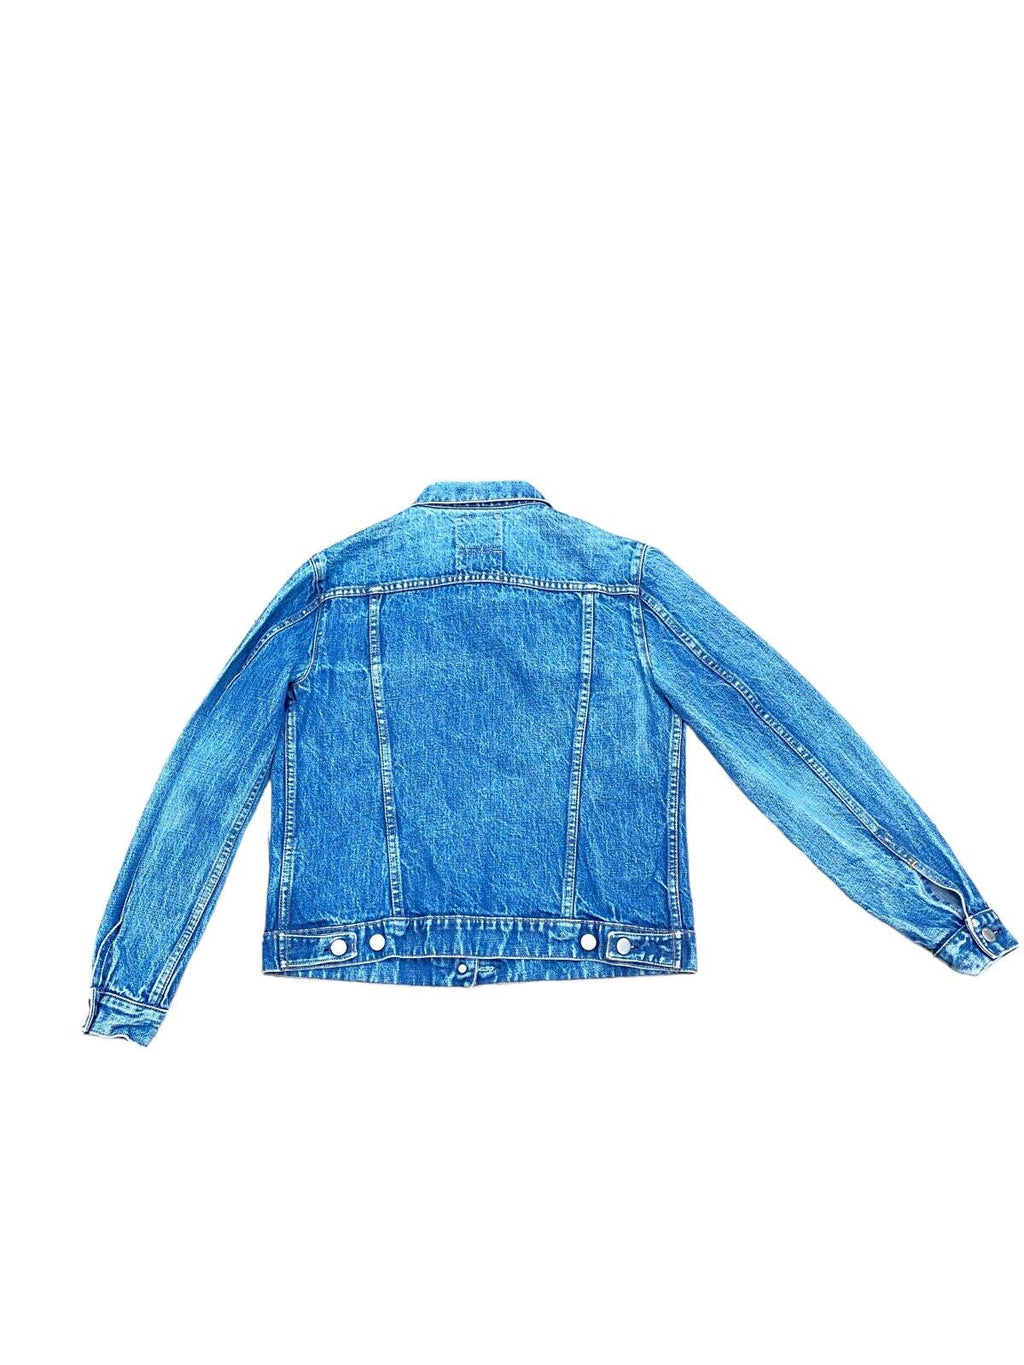 Vintage Classic Blue Denim Jacket  Size M Women